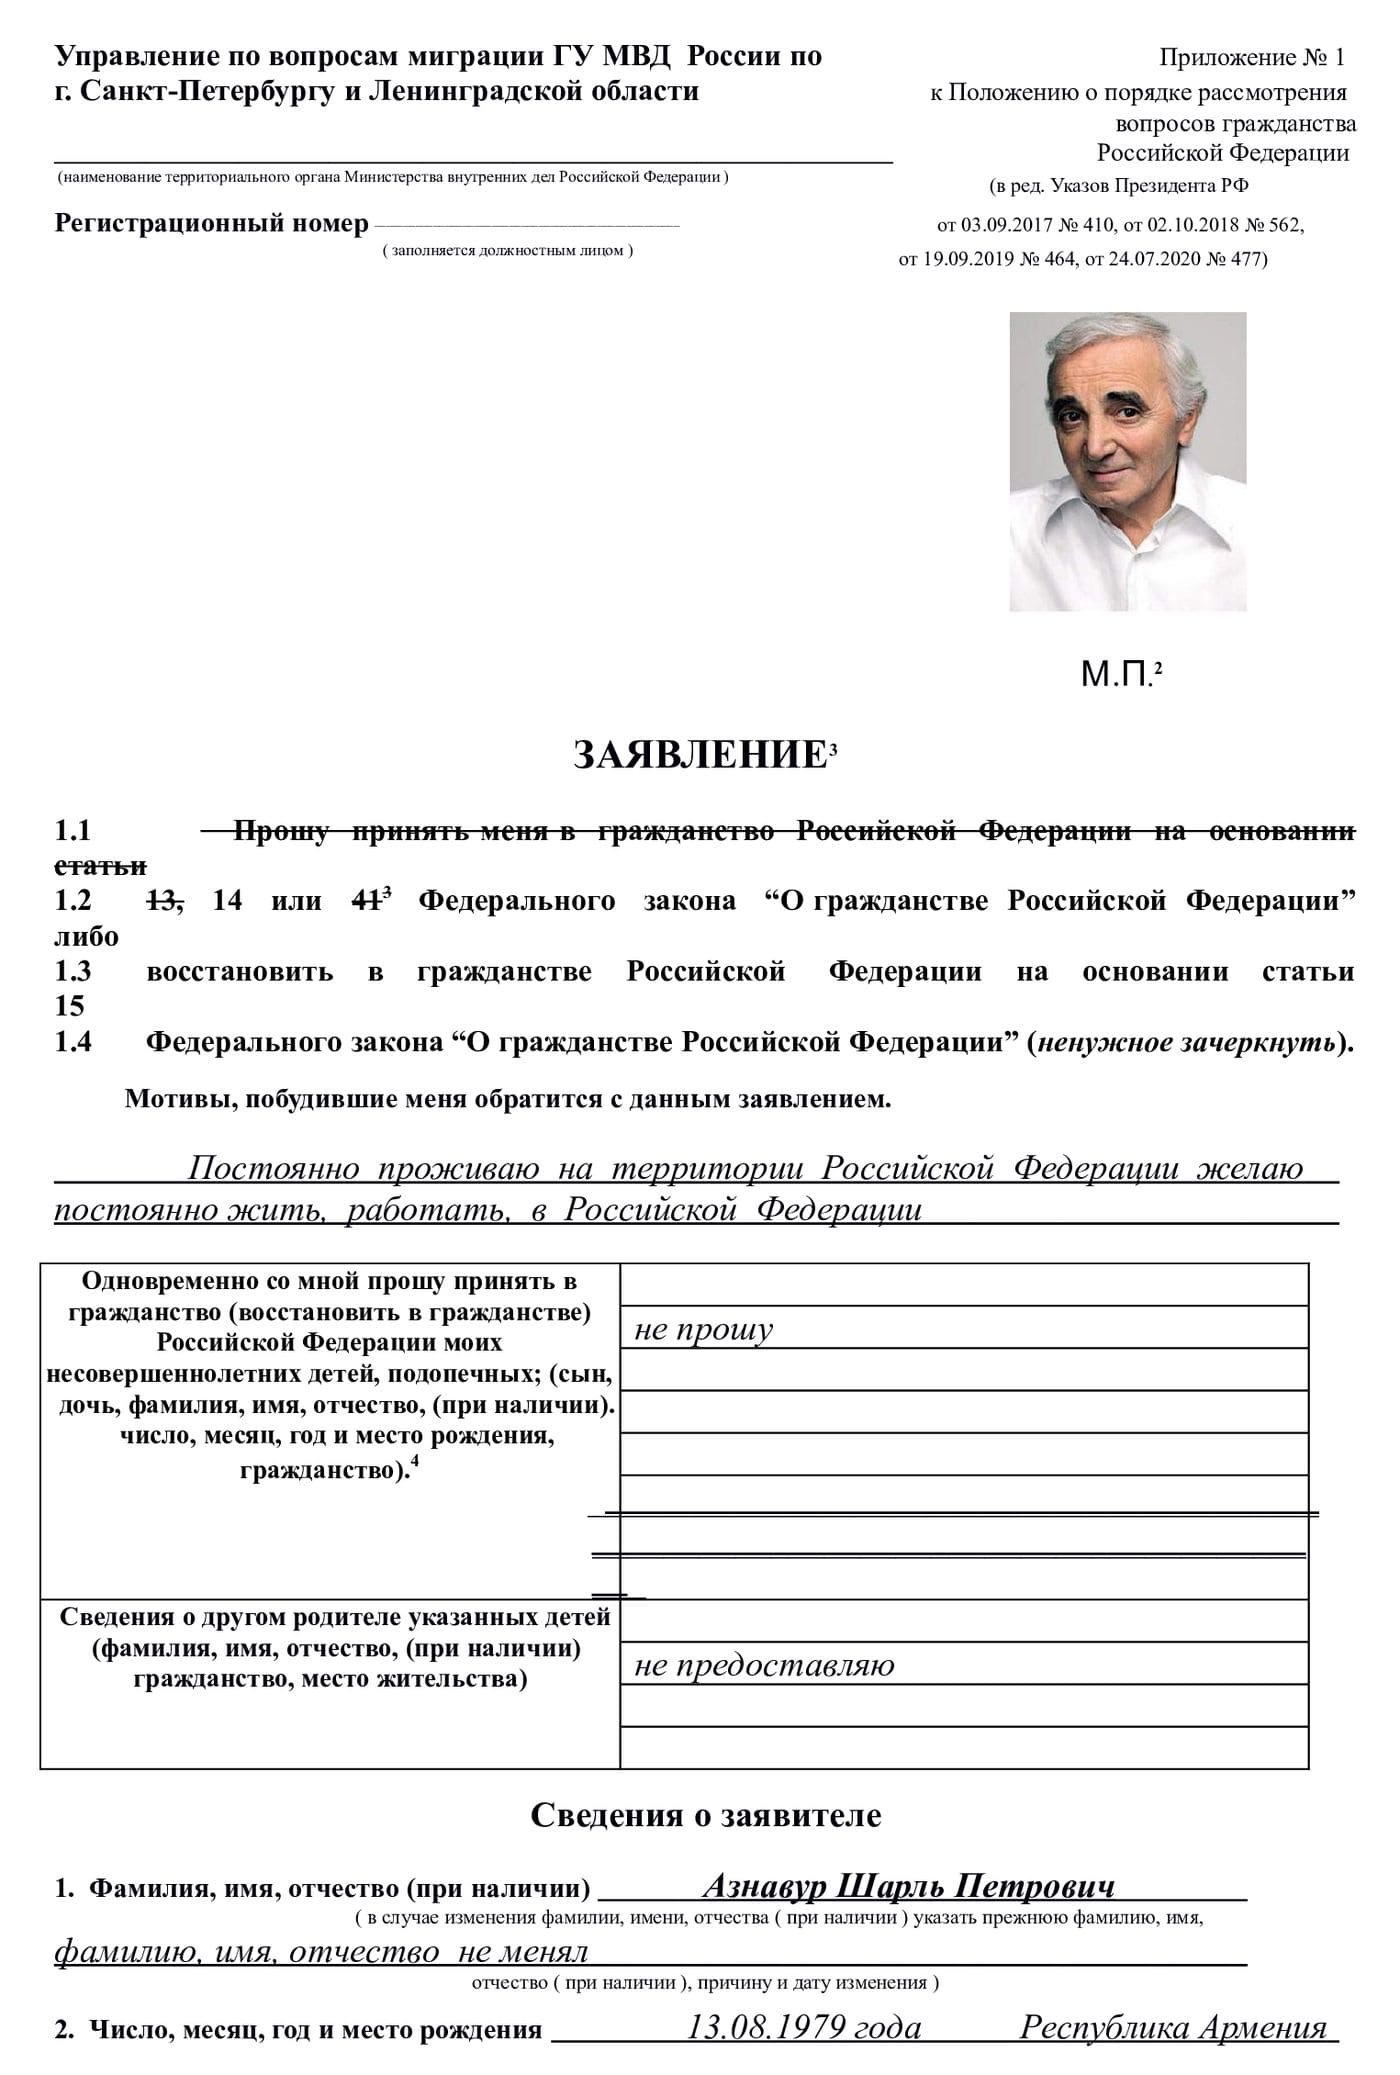 Образец заявления на гражданство России от армянина